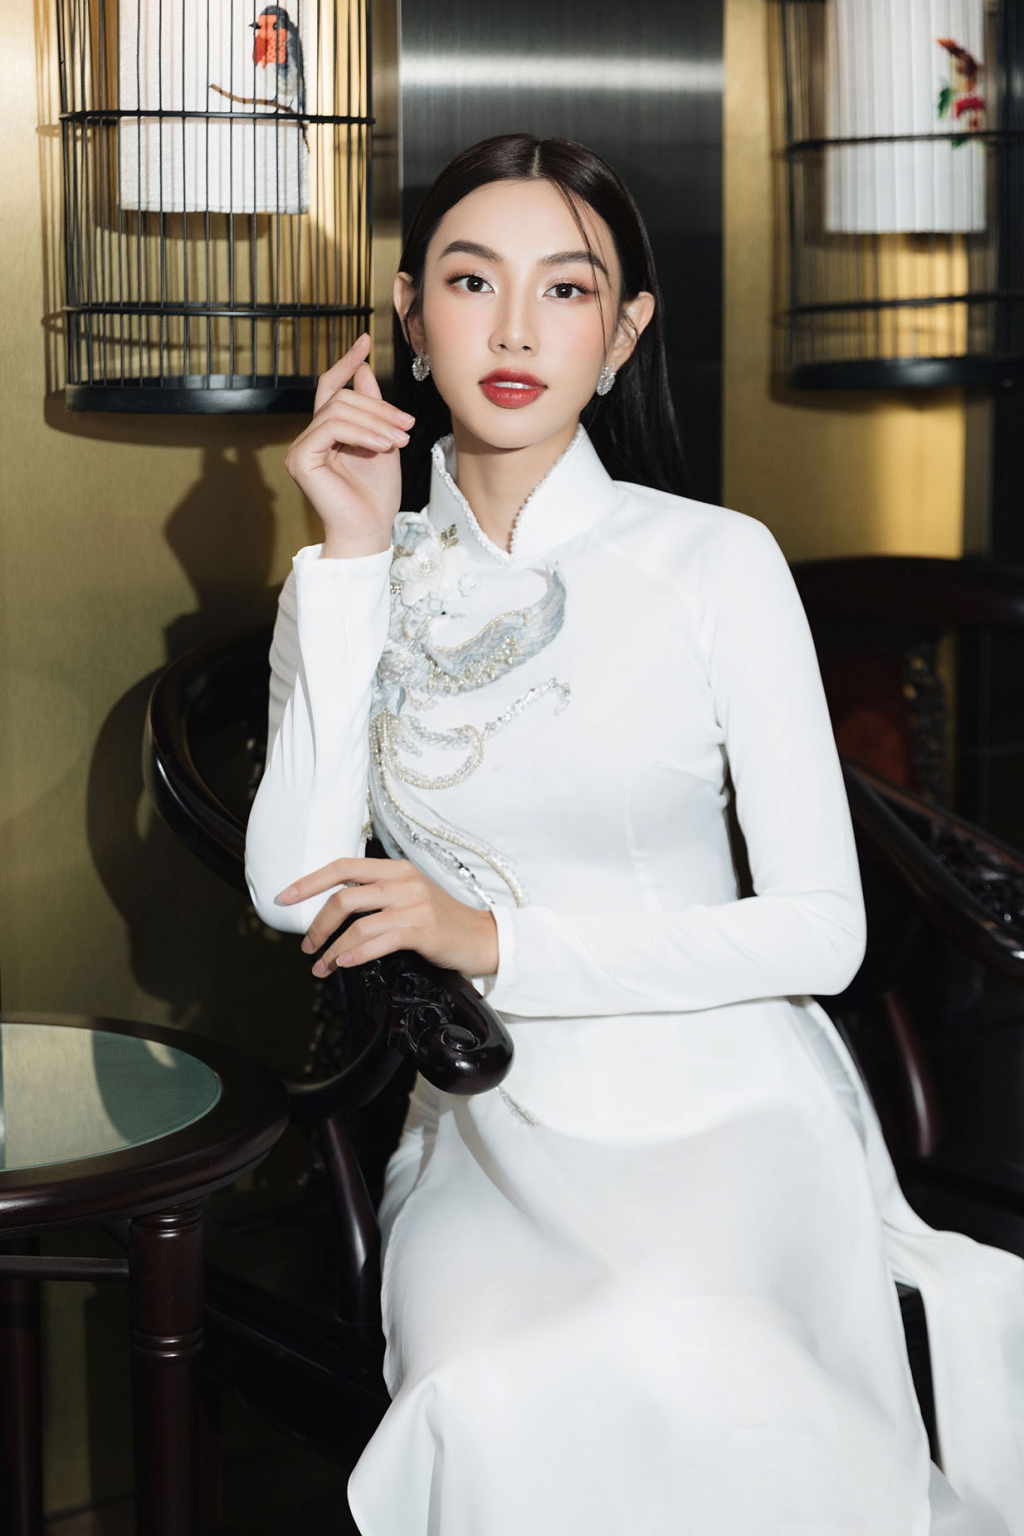 Hoa hậu Thùy Tiên nền nã trong tà áo dài khi đảm nhận vai trò đại sứ truyền thông hội chợ du lịch quốc tế TP. HCM